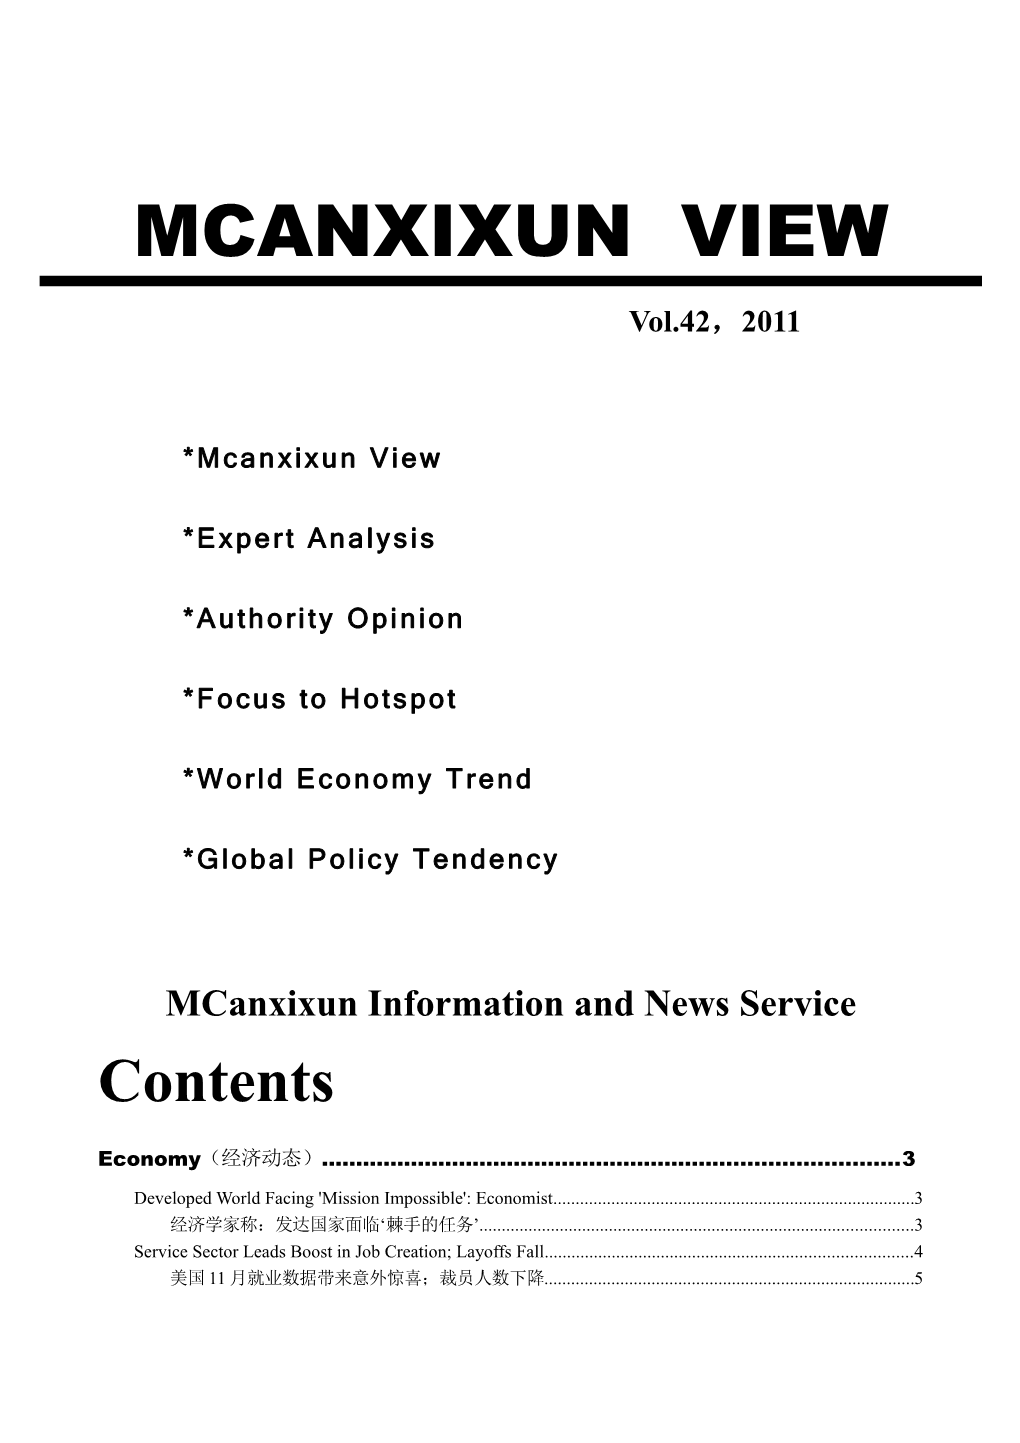 Mcanxixun* Information